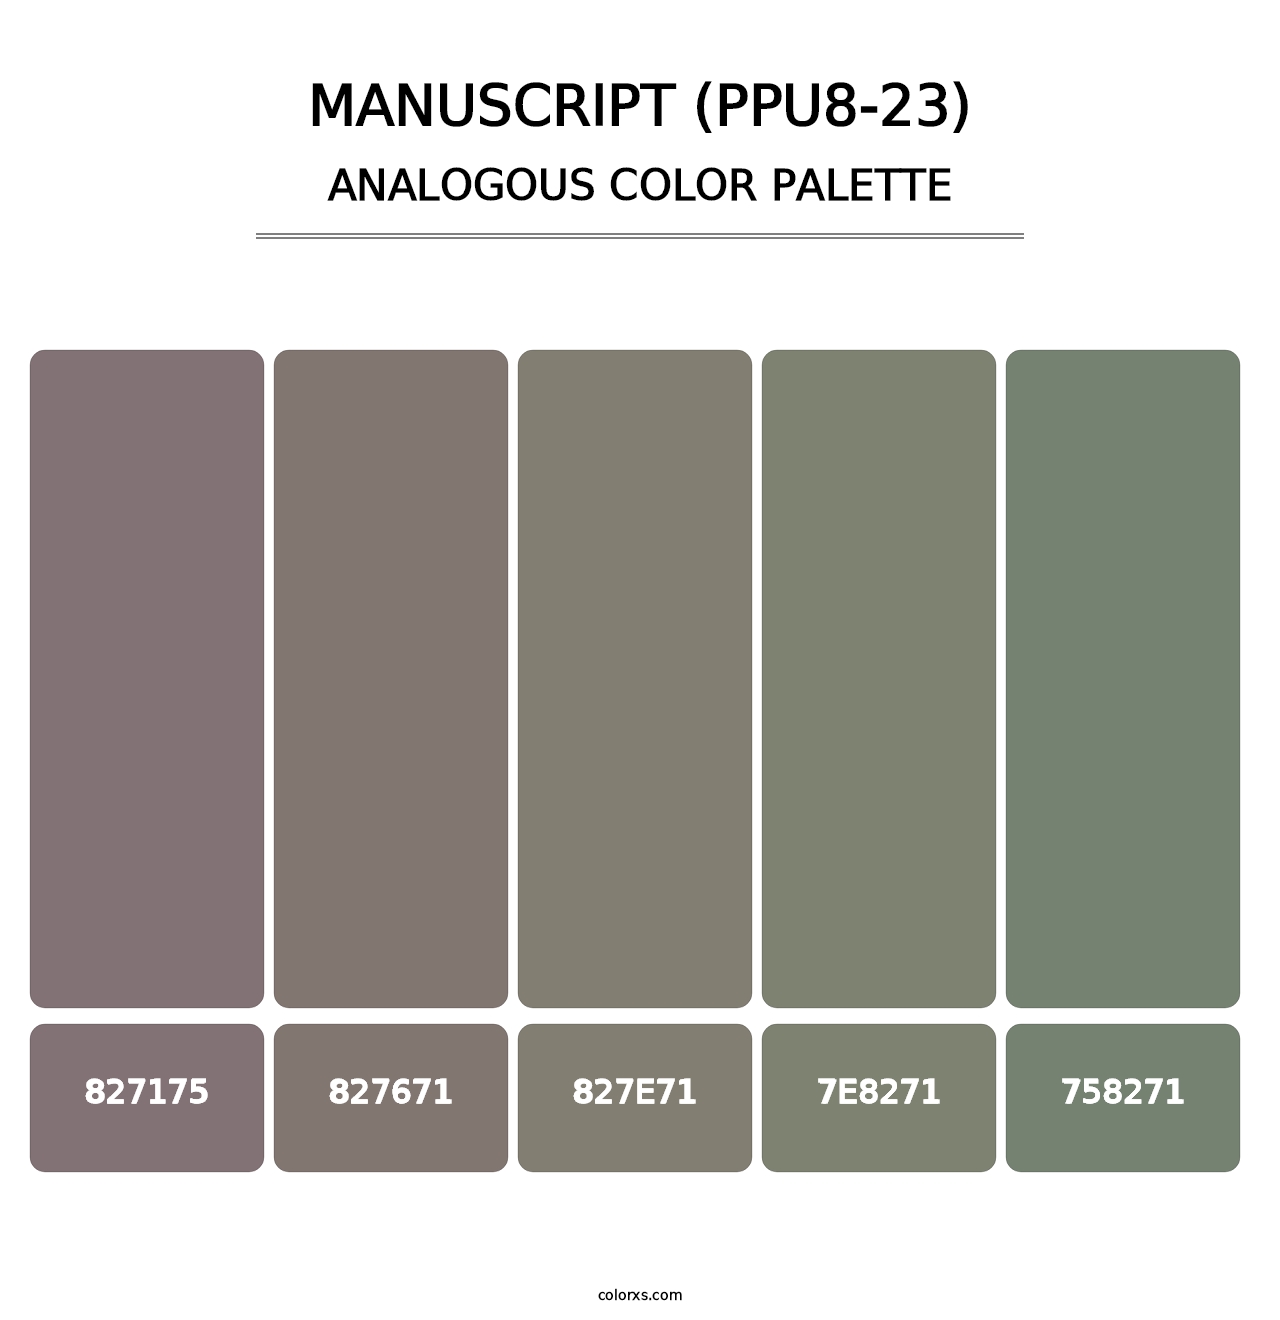 Manuscript (PPU8-23) - Analogous Color Palette